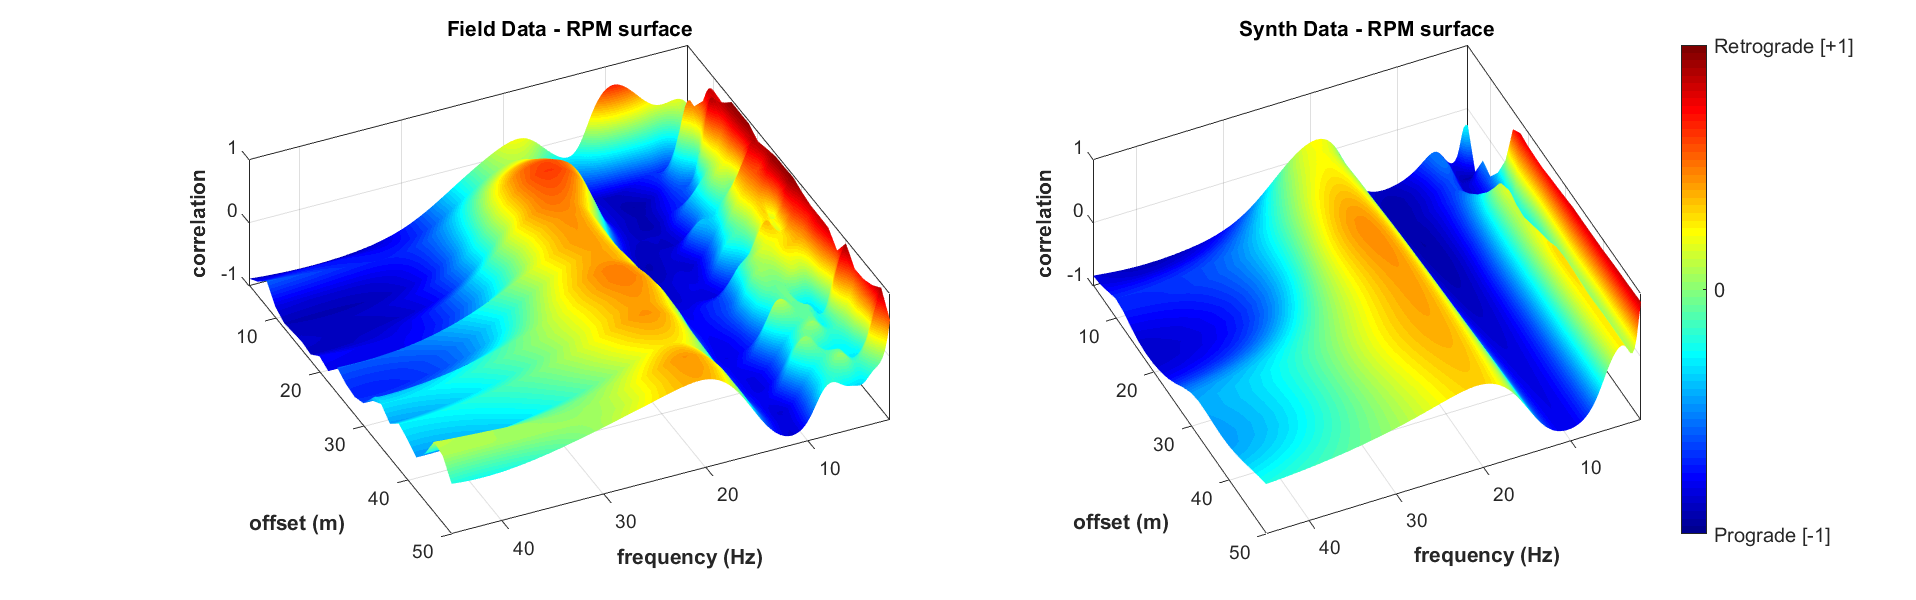 Superficie RPM frequenza-offset (dati di campagna e, sulla destra, modello identificato)